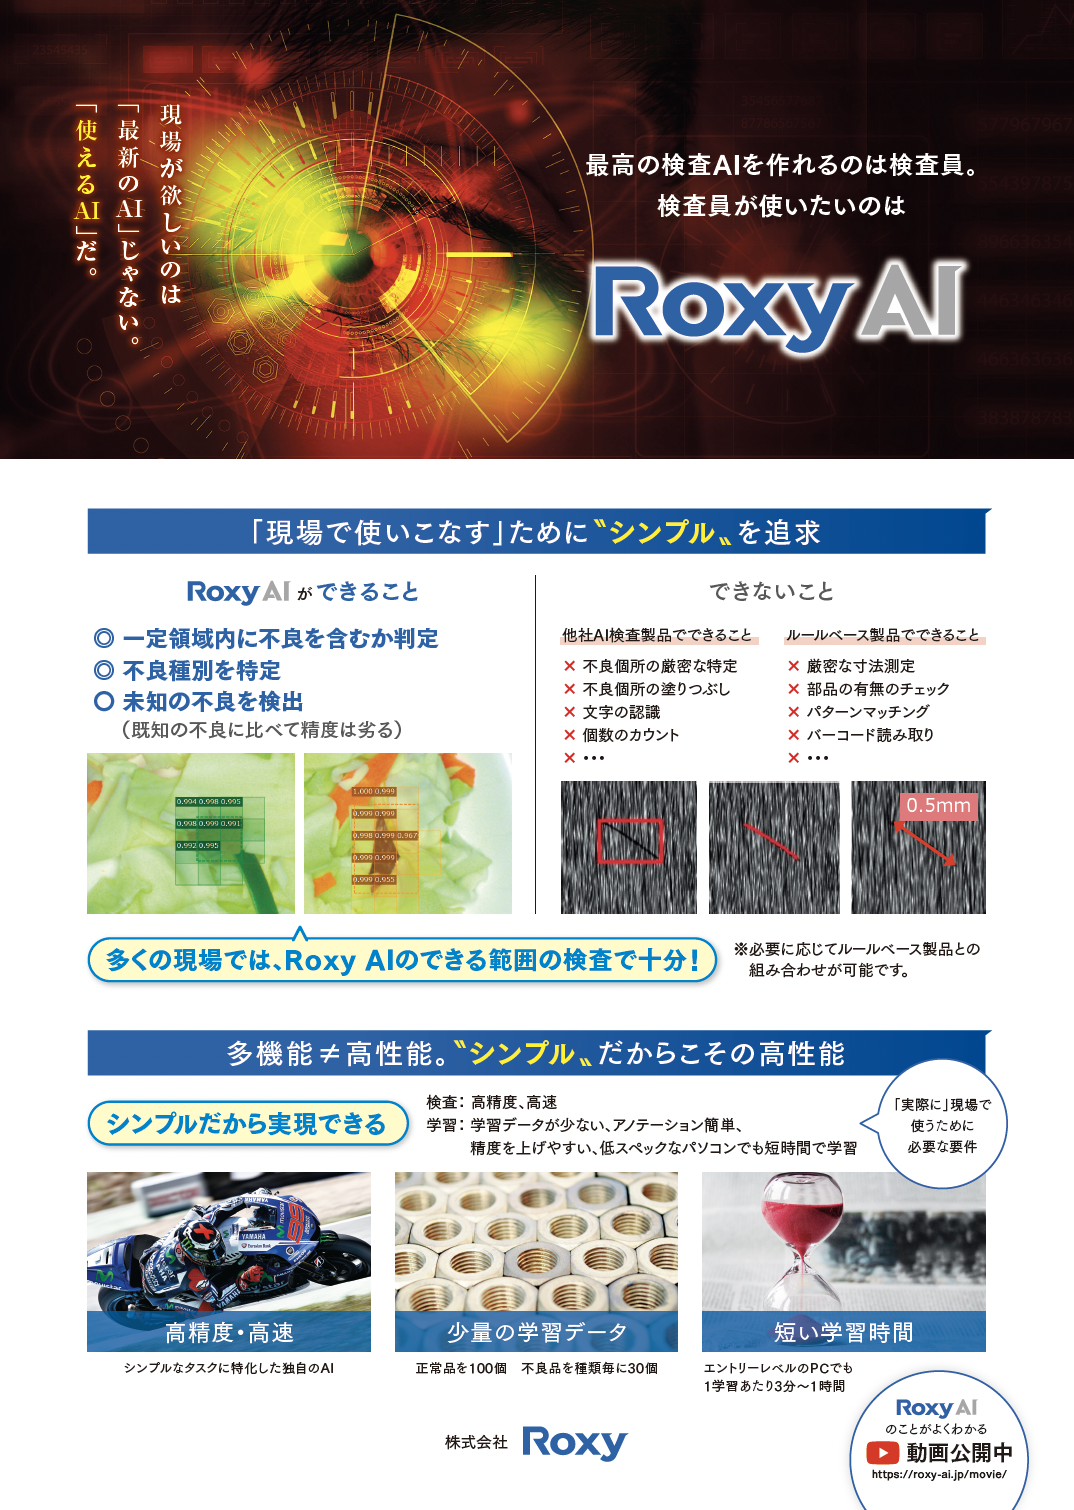 画像検査ソフトウェア Roxy AI 紹介リーフレット